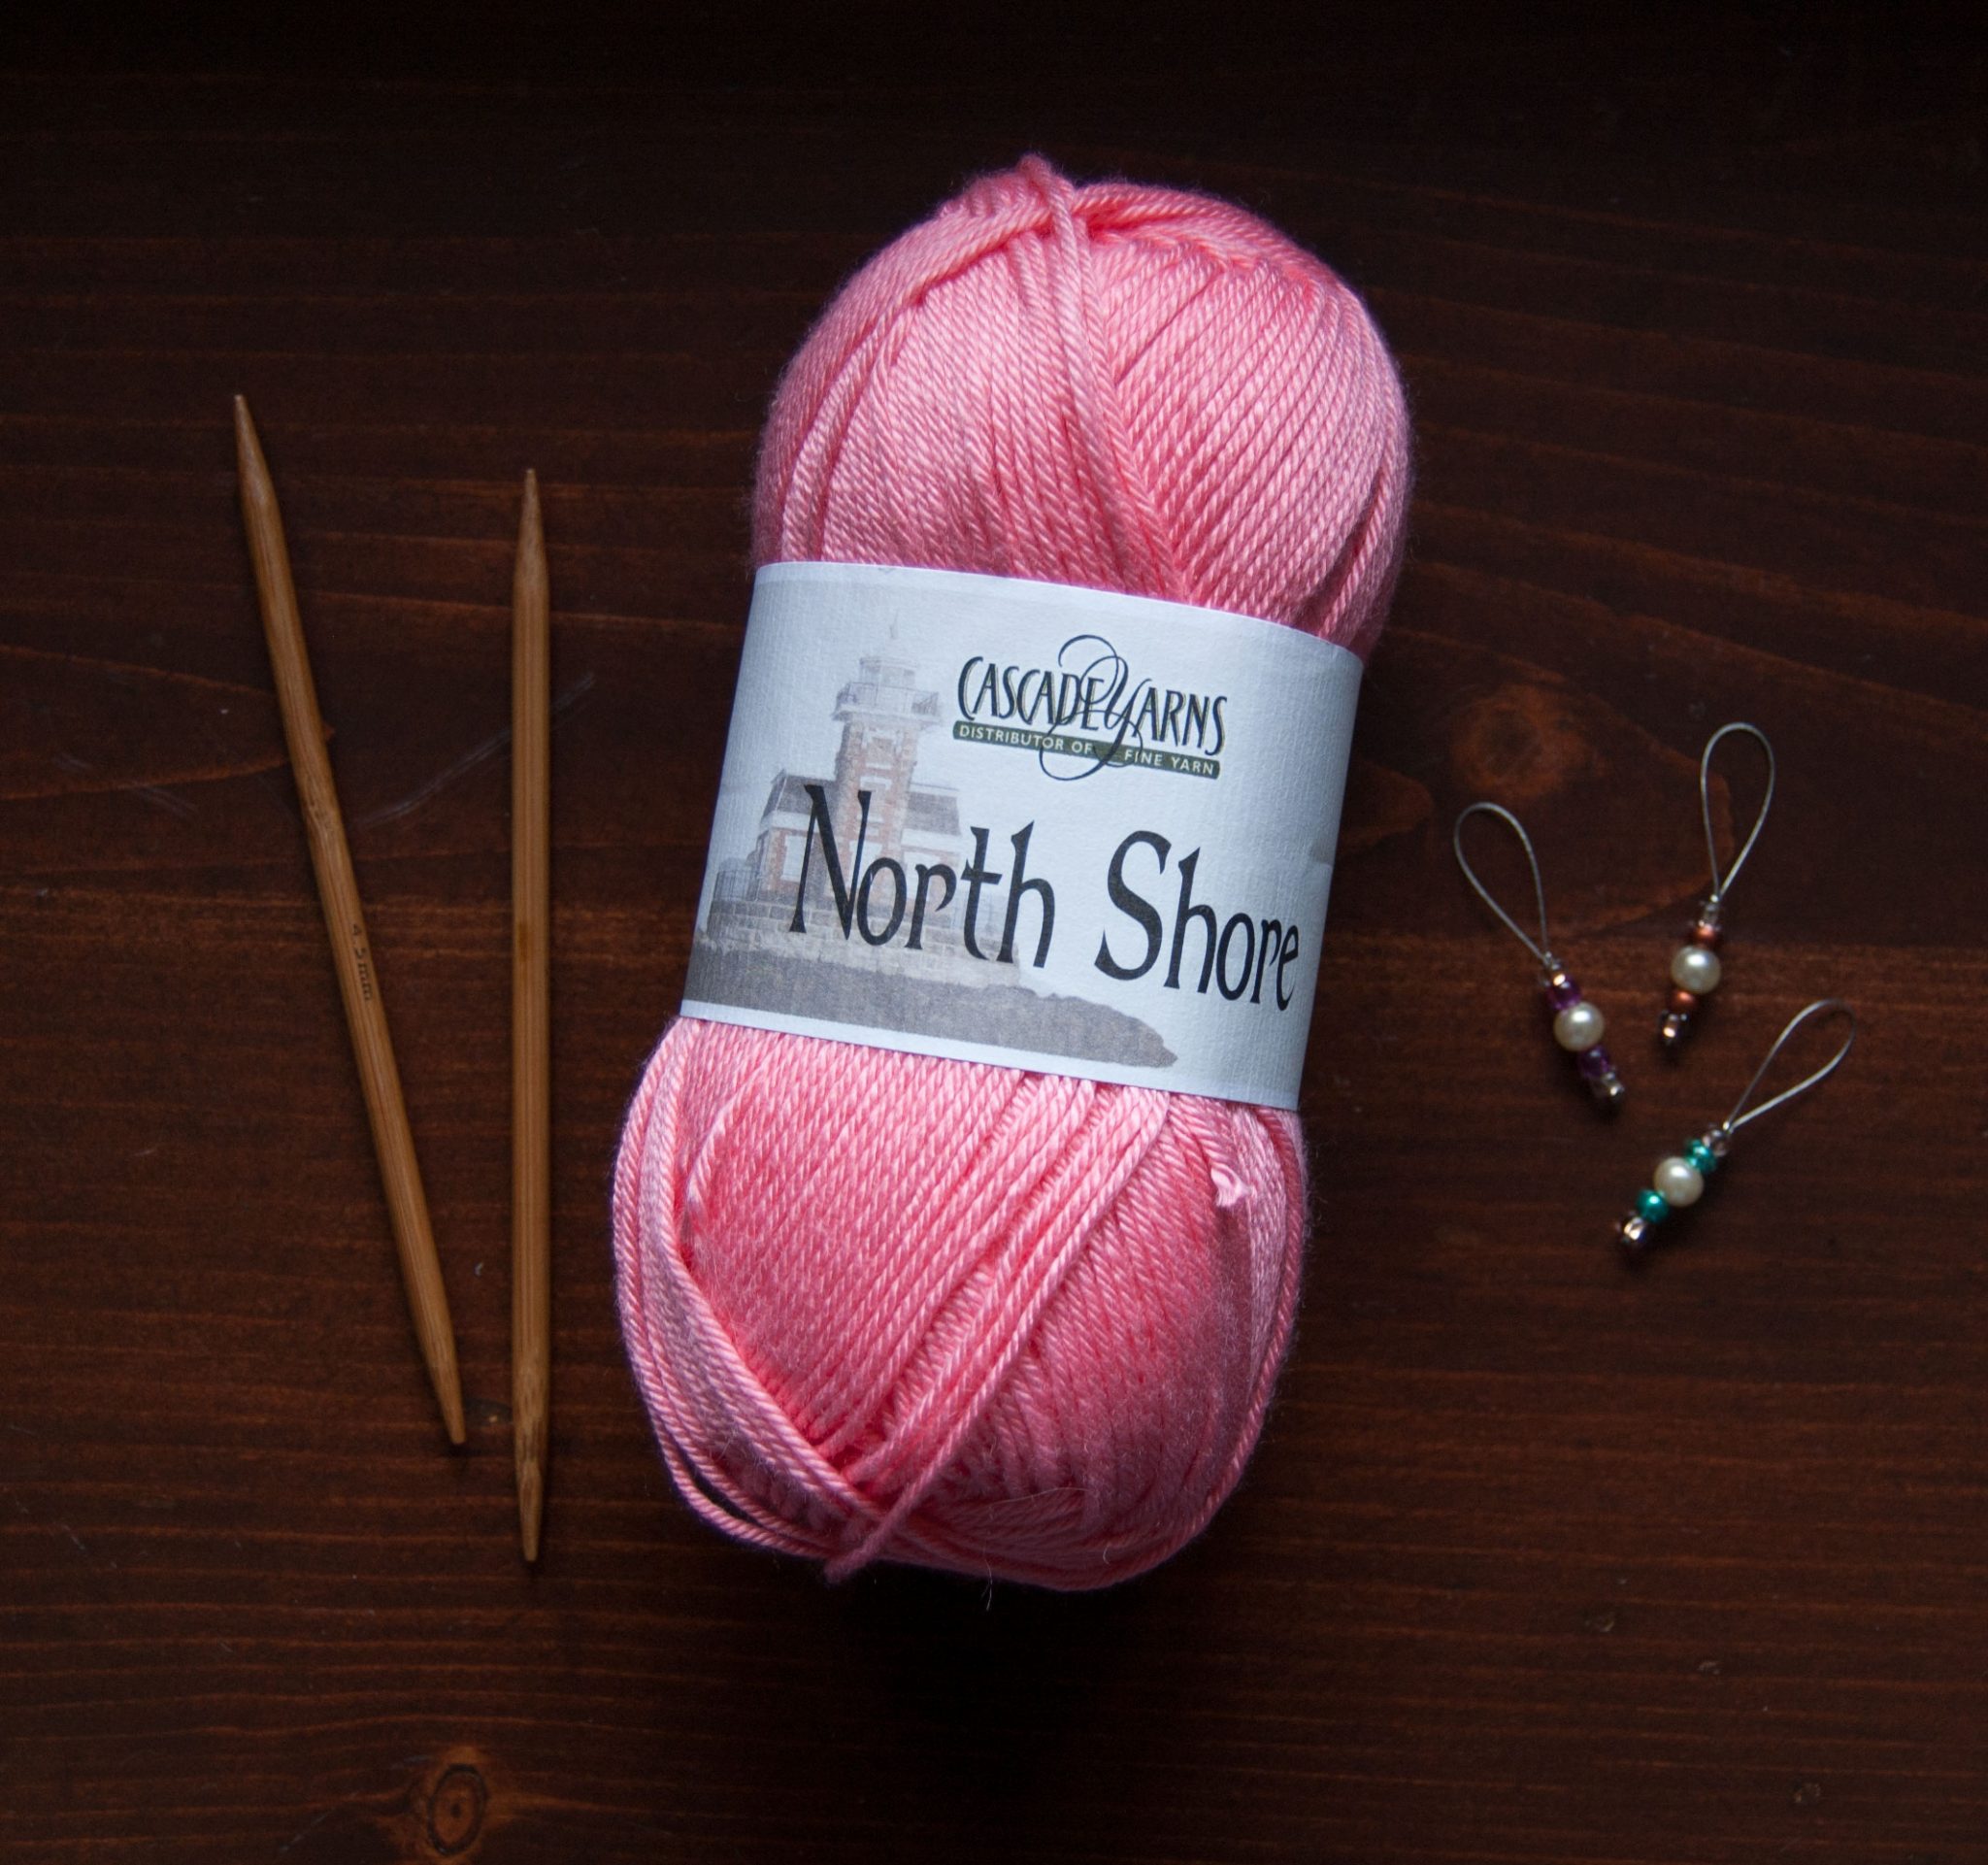 Cascade Yarns North Shore Yarn Review - Budget Yarn Reviews